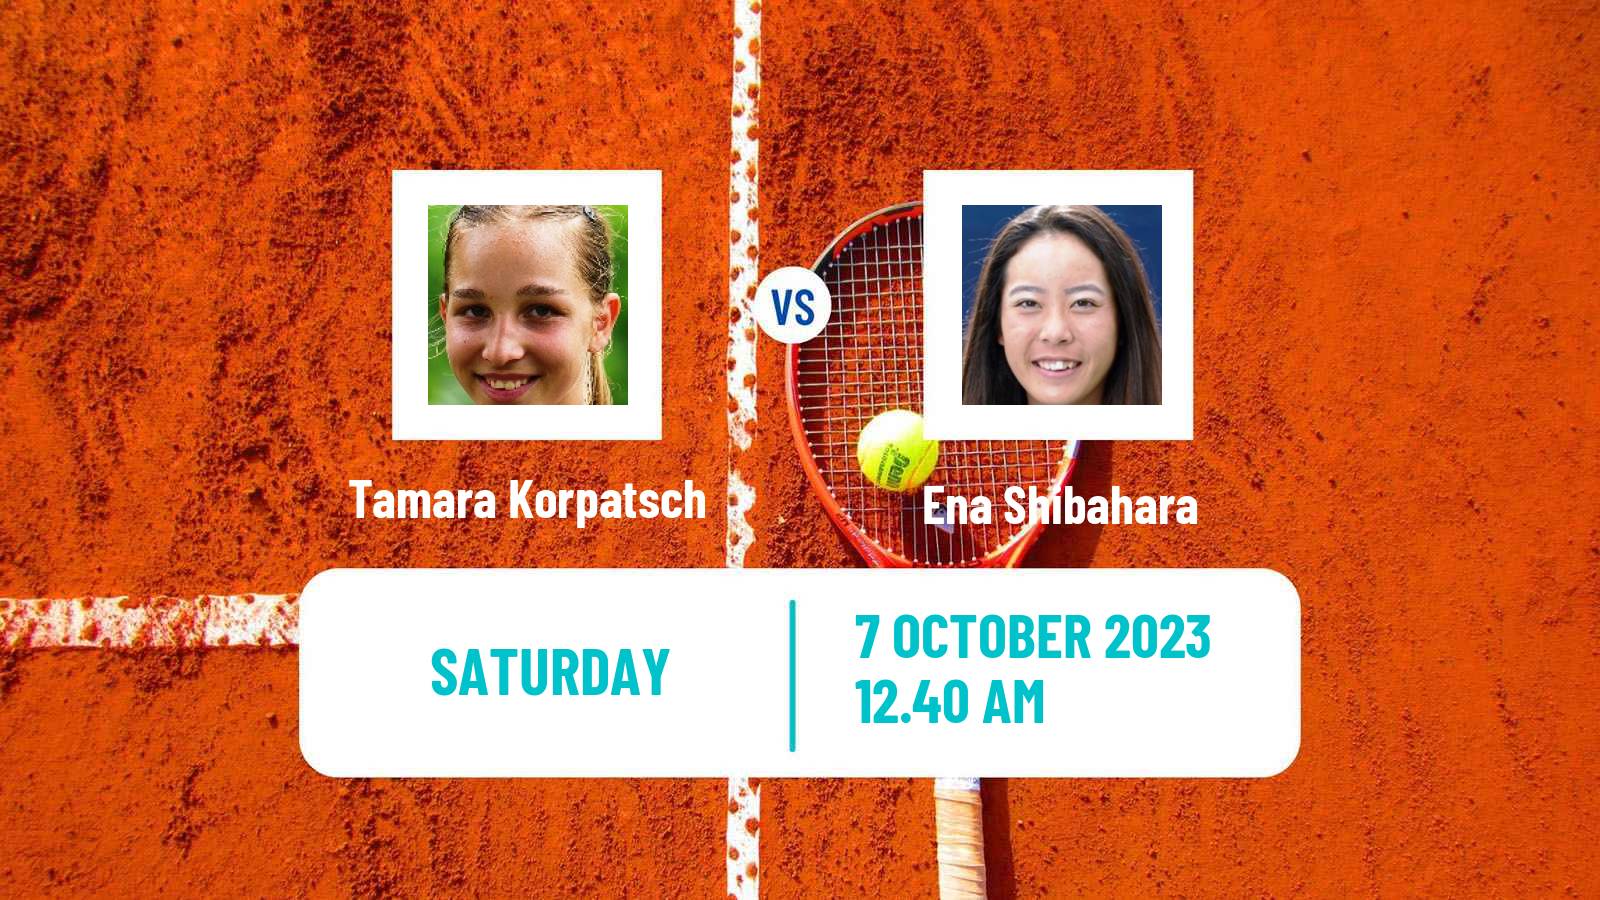 Tennis WTA Zhengzhou Tamara Korpatsch - Ena Shibahara